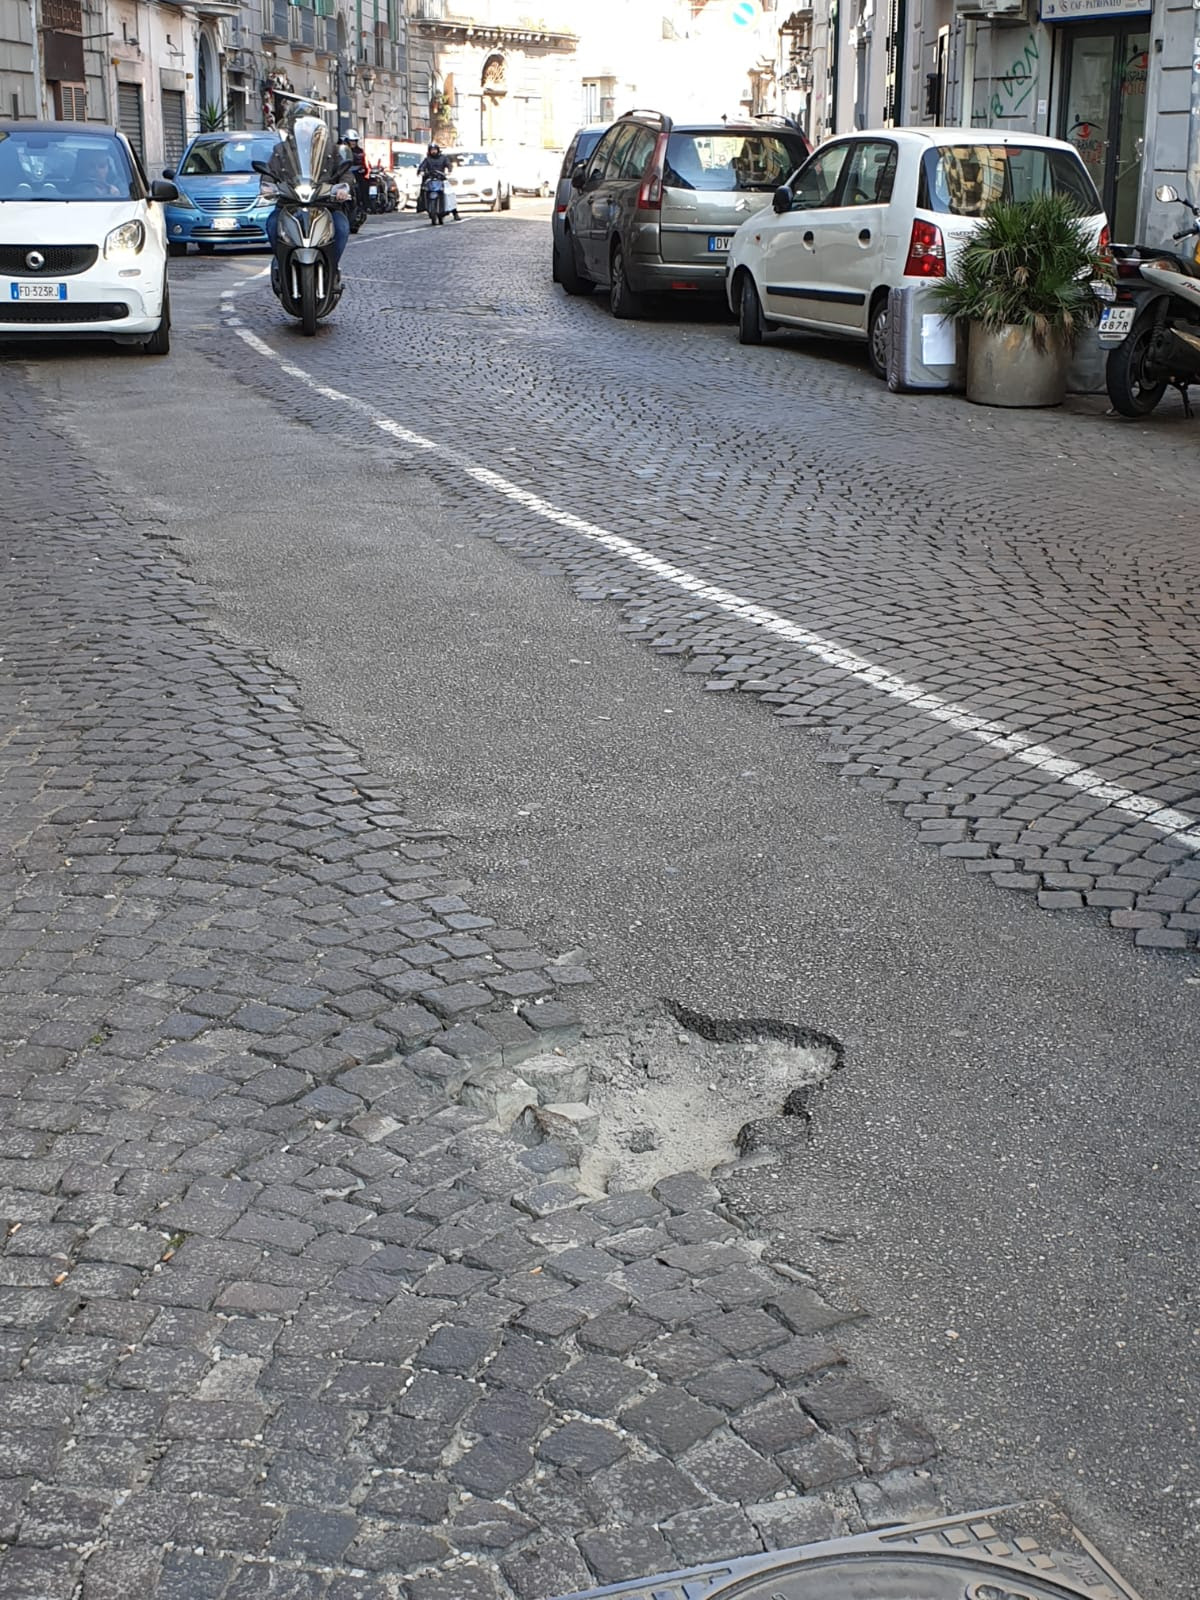 Ad aprile finalmente avranno inizio i lavori di restyling di Corso Vittorio Emanuele. Borrelli: “Sono anni che chiediamo la sostituzione dei sampietrini con l’asfalto in quella strada”